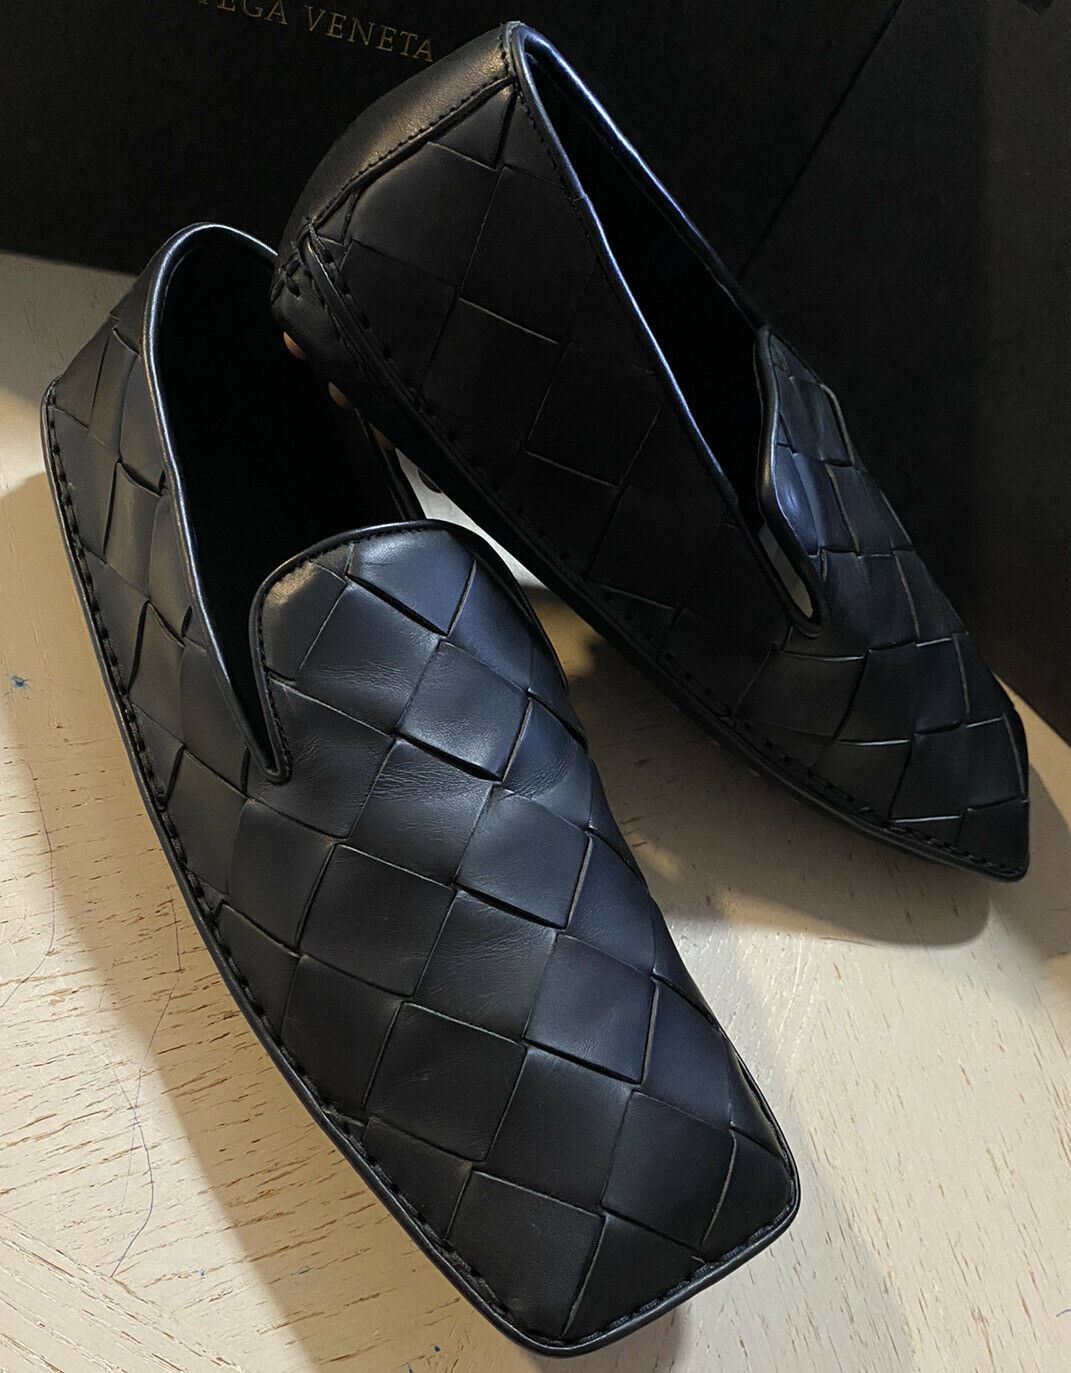 NIB $740 Bottega Veneta Men Leather Moccasin Driver Shoes Black 9 US/42 Eu